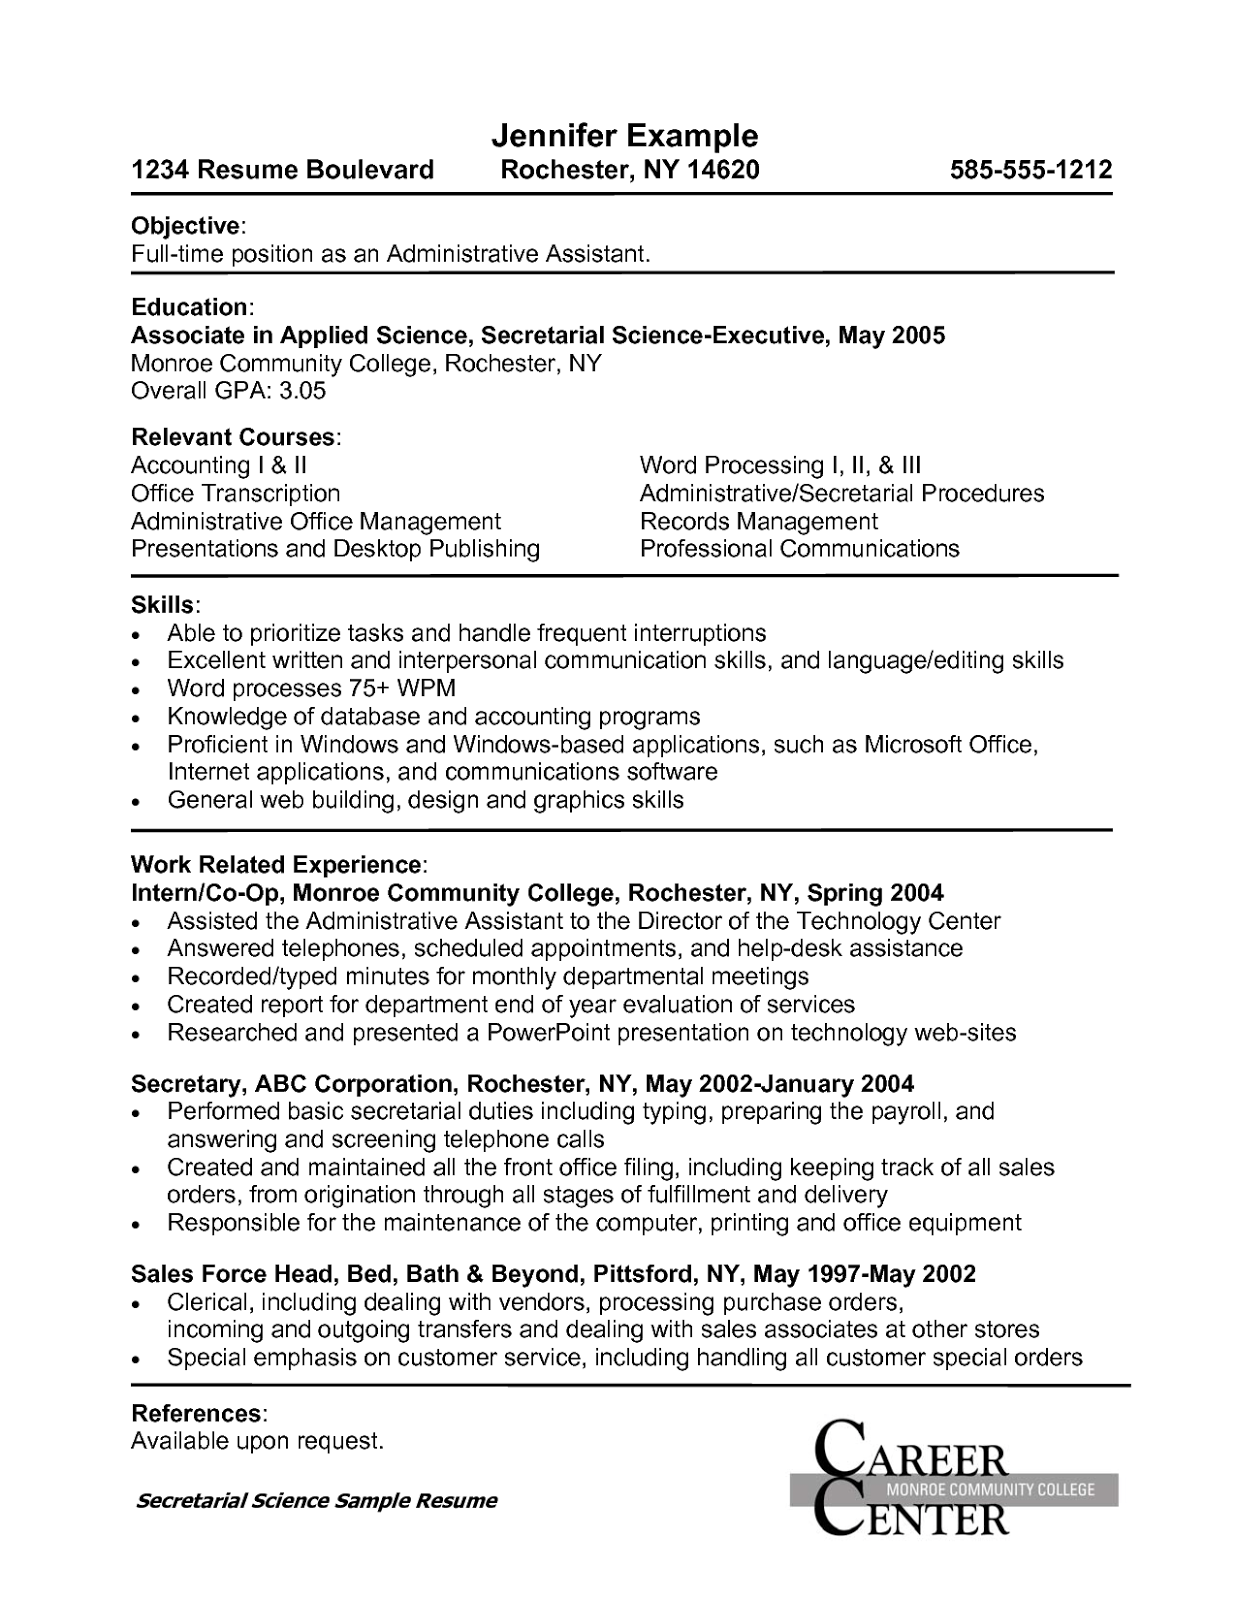 Admin assistant resume job description